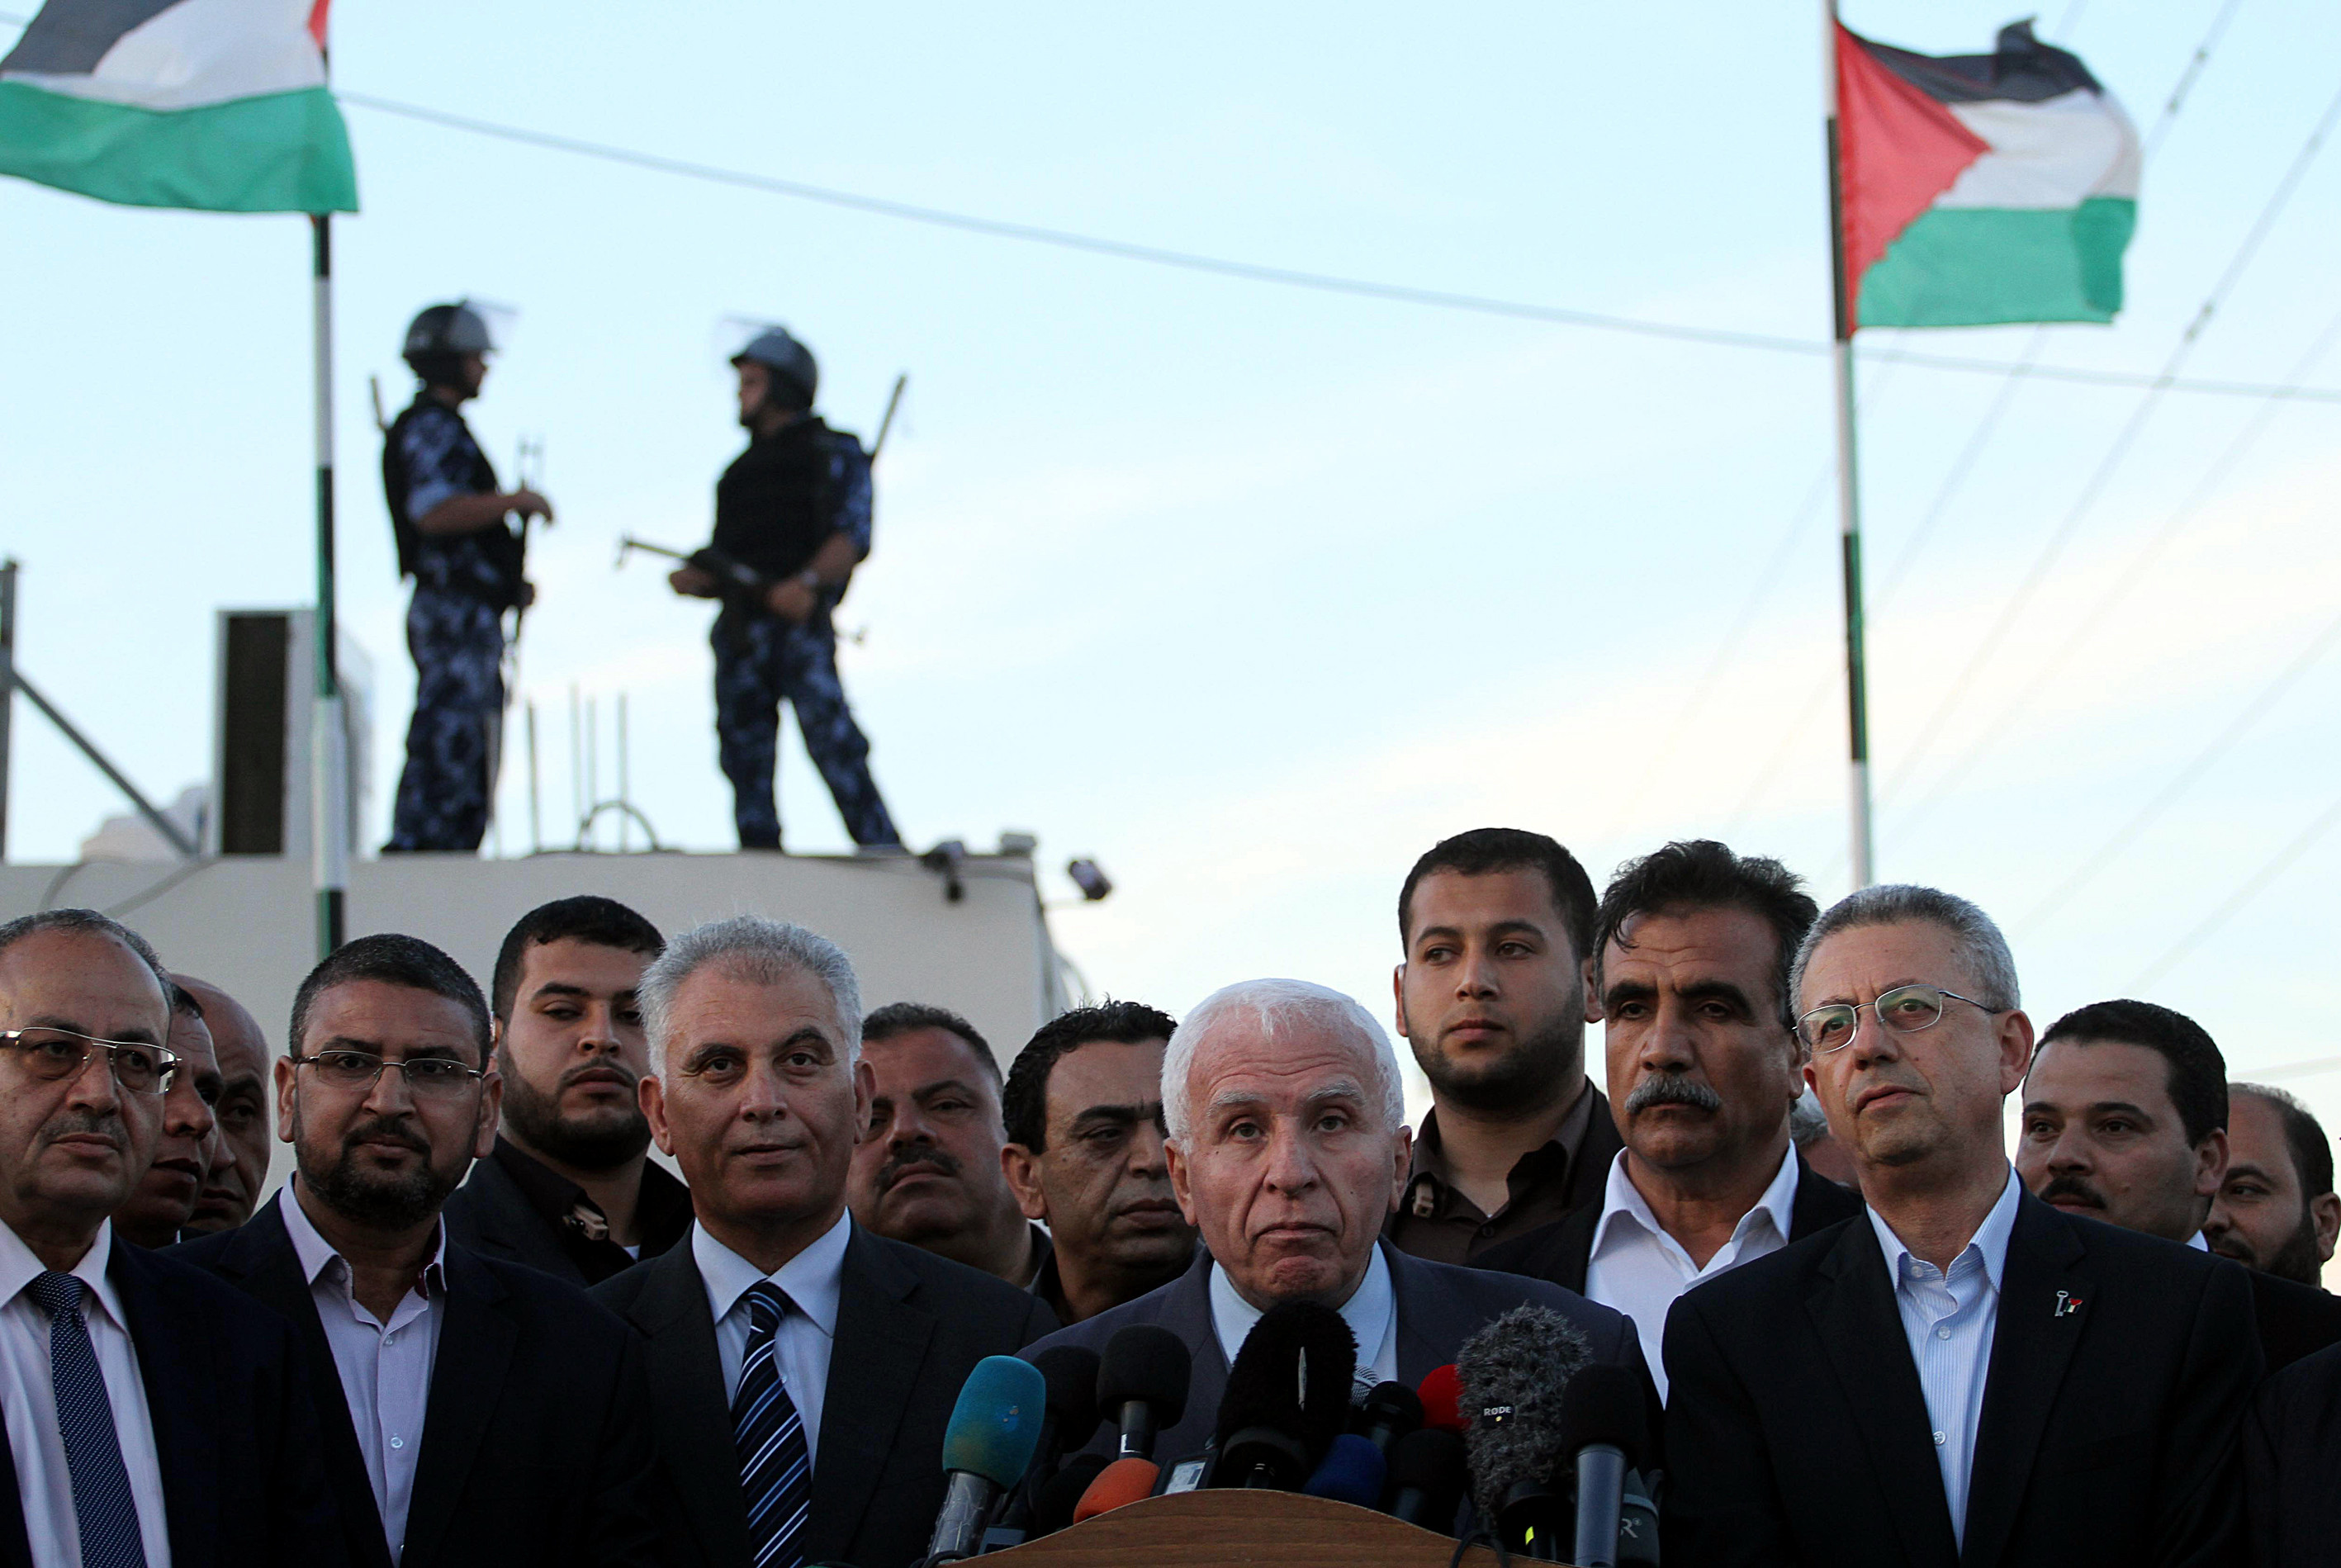 مصطفى البرغوثي: تقدم ملموس في جلسات المصالحة الفلسطينية